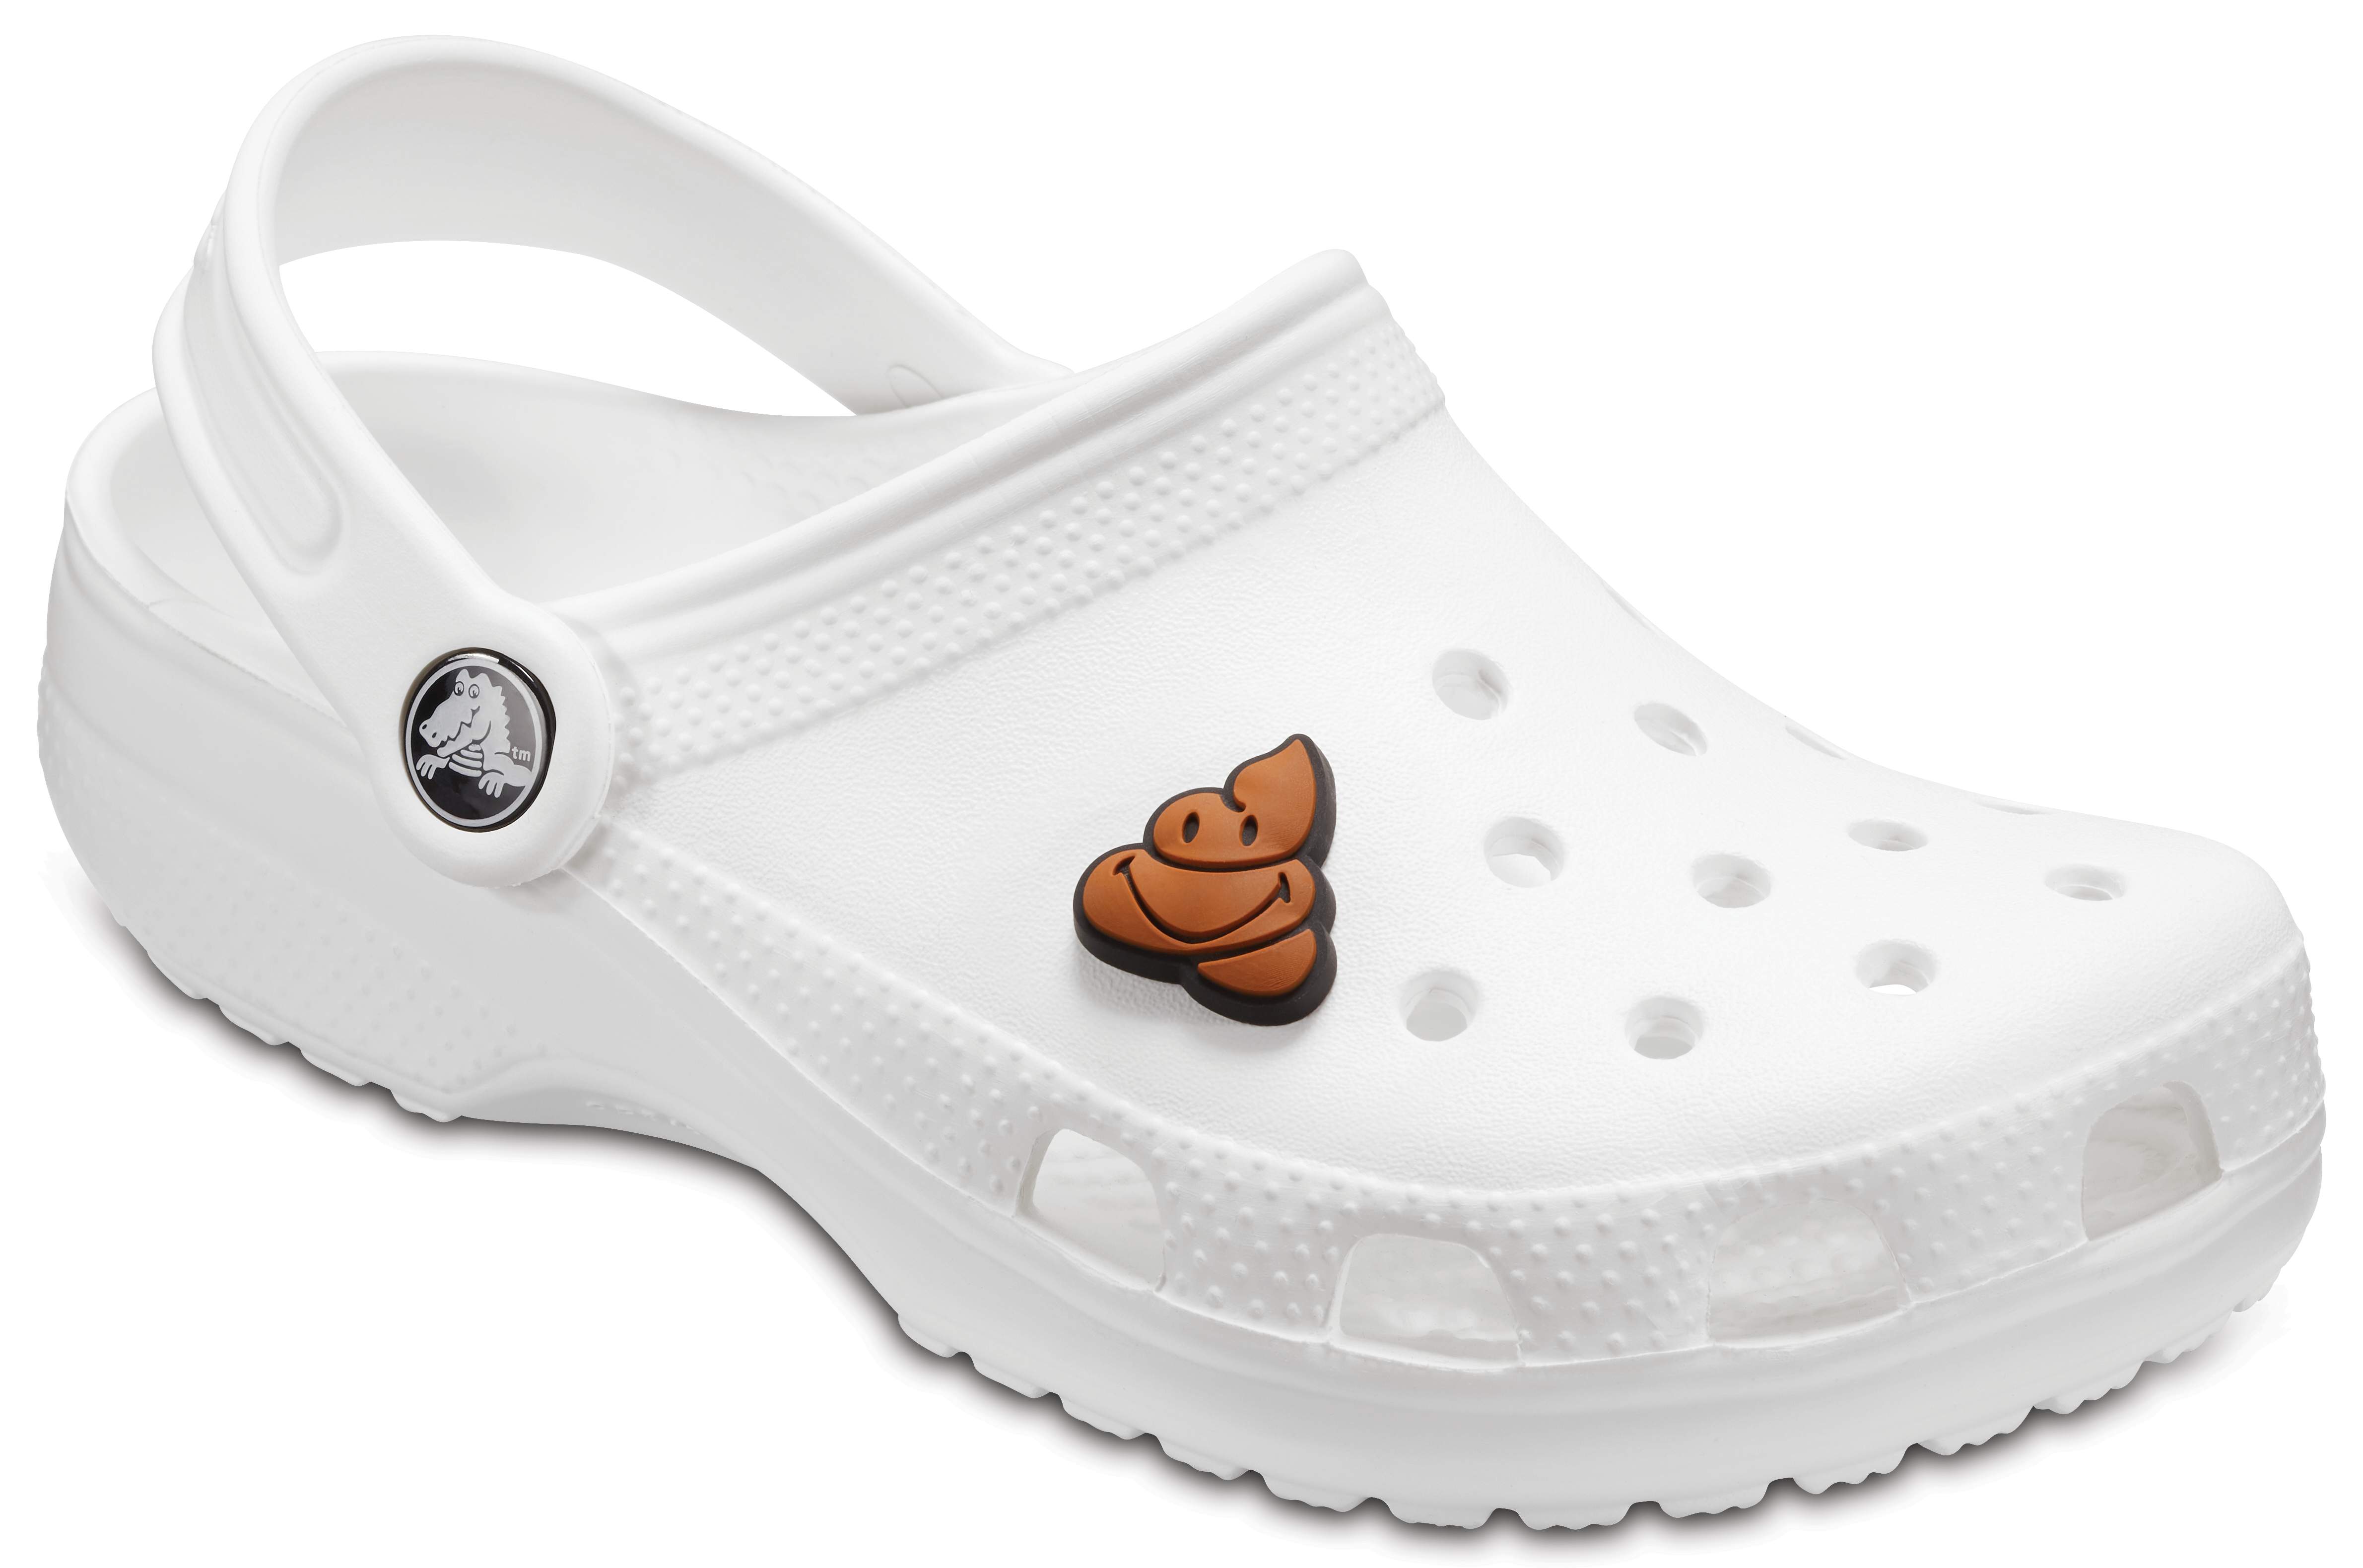 crocs perforated sneakers